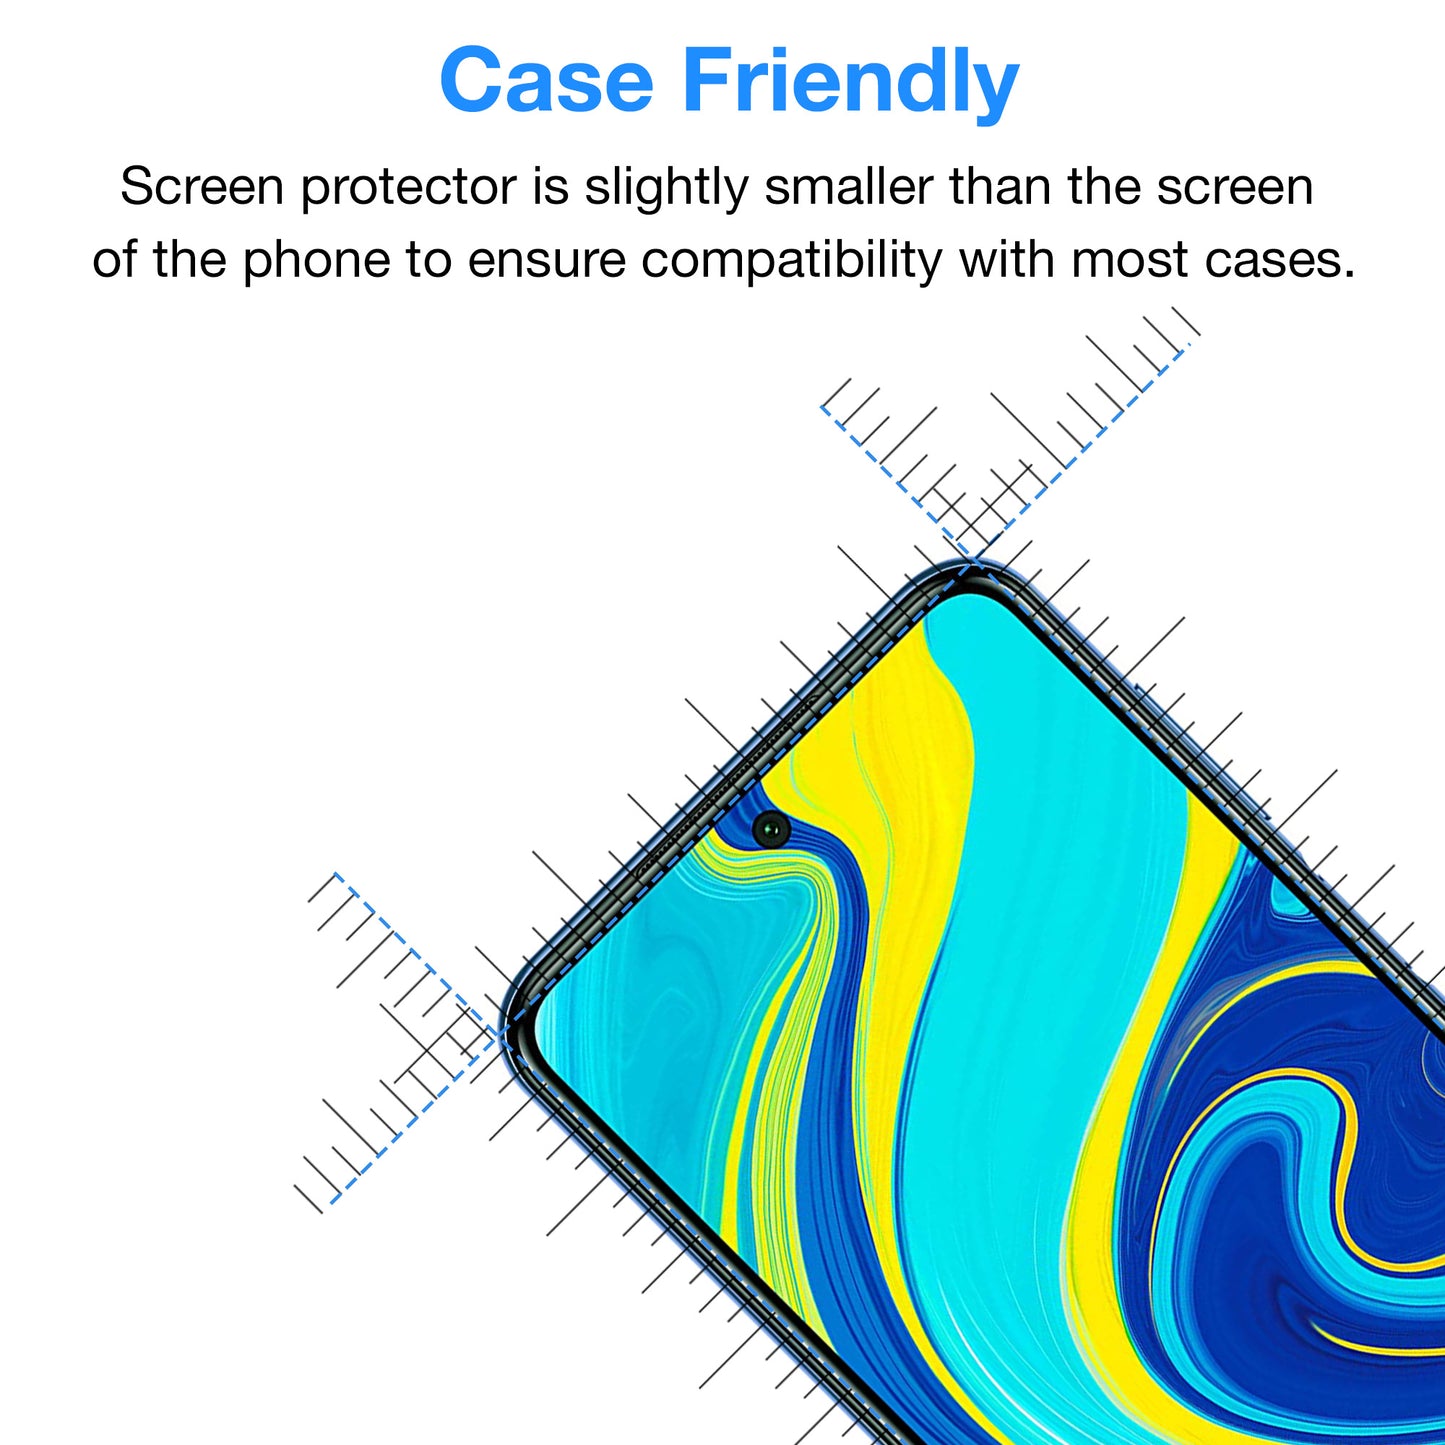 [3 Pack] MEZON Xiaomi Redmi Note 9S Anti-Glare Matte Screen Protector Case Friendly Film (Redmi Note 9S, Matte)